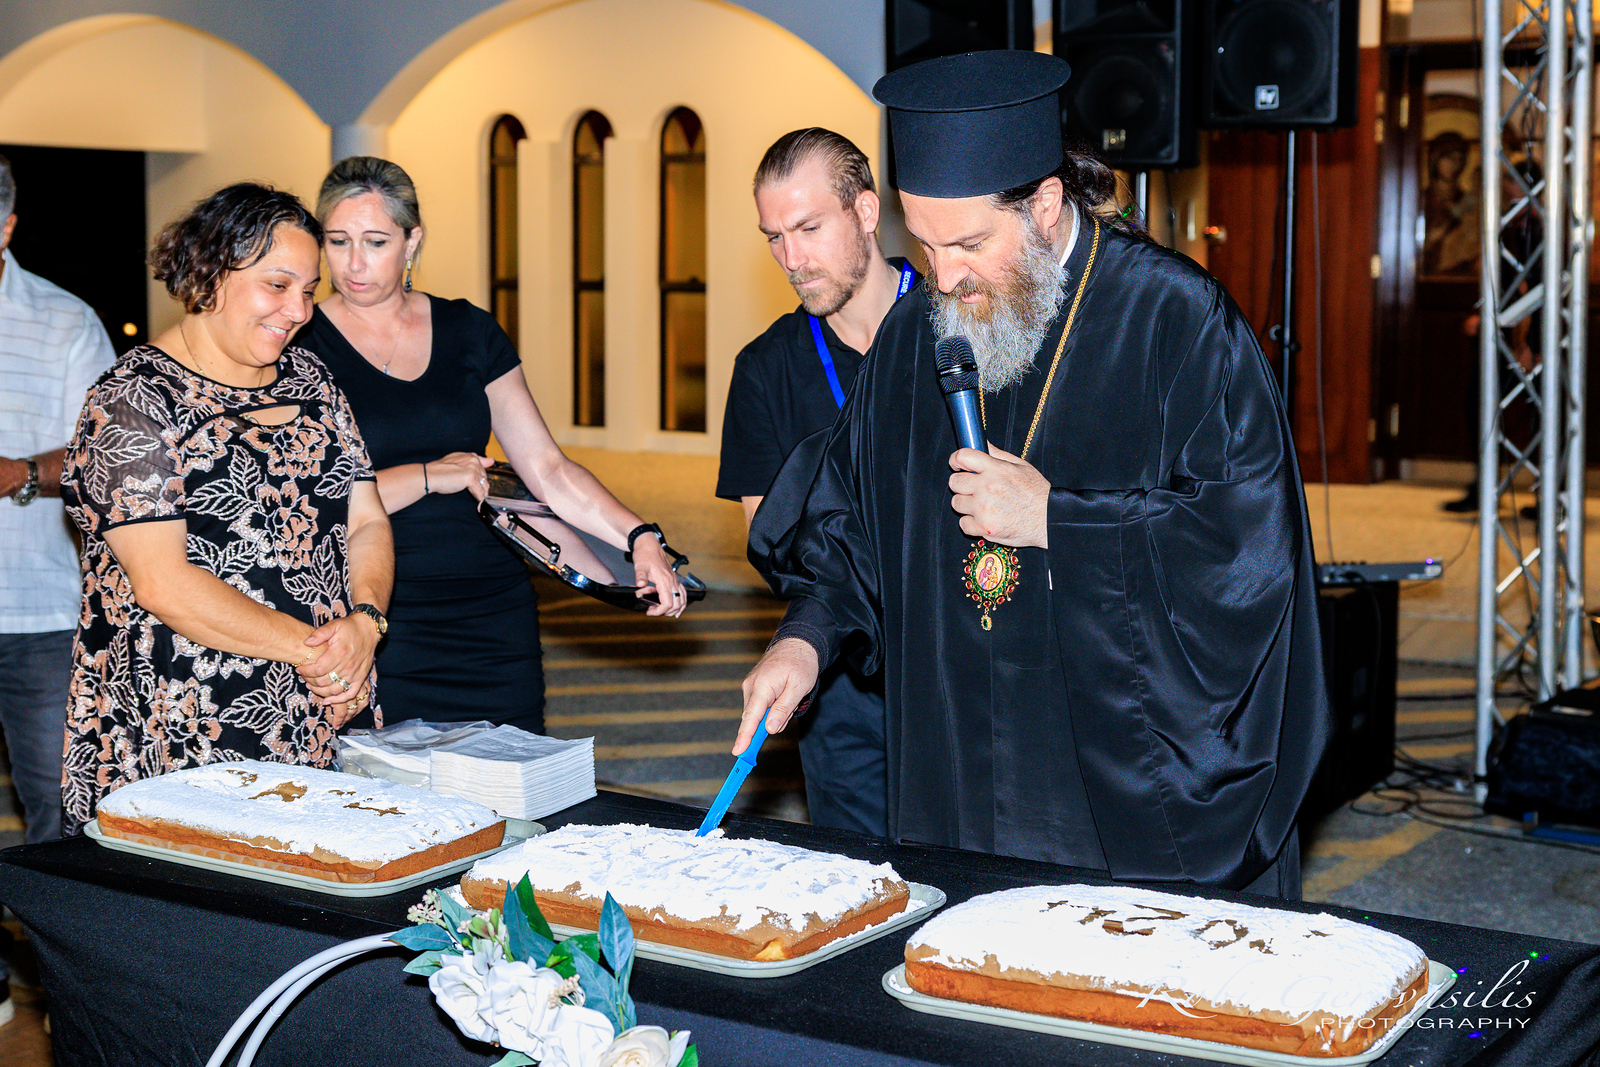 Πρωτοχρονιάτικη εκδήλωση της Αρχιεπισκοπικής Περιφέρειας Πέρθης, με συμμετοχή πλήθους κόσμου